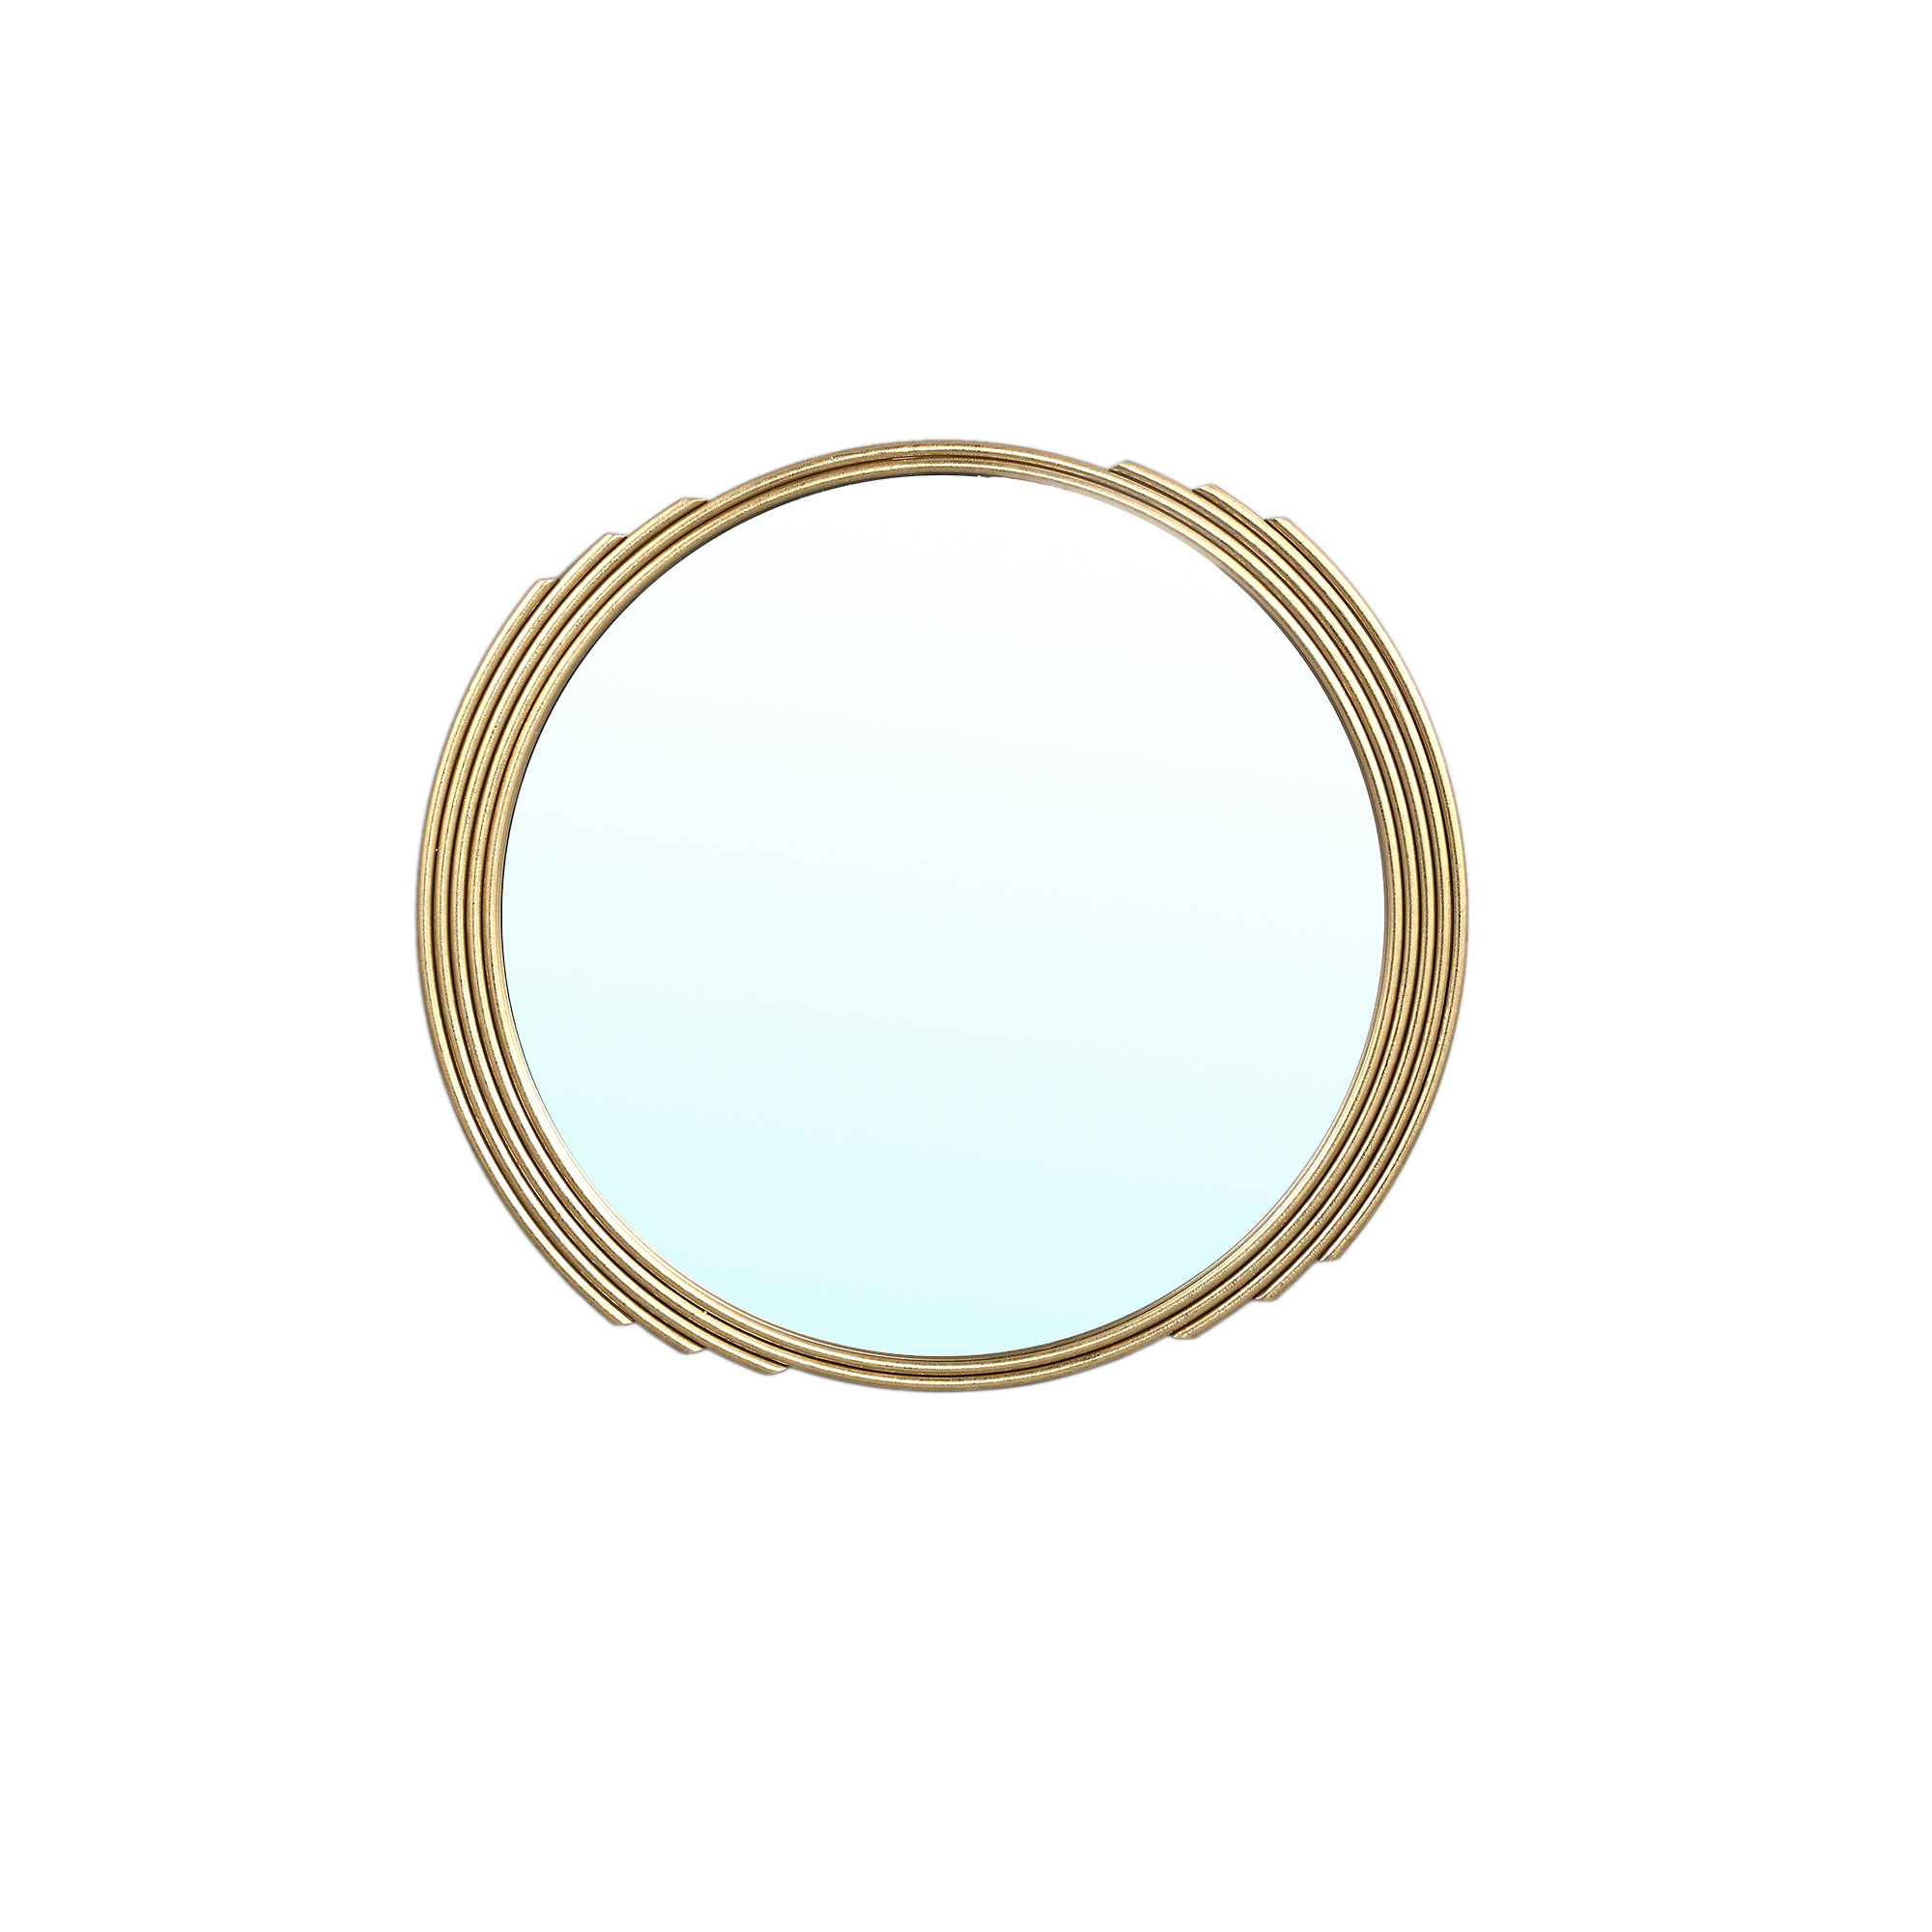 Seliza Gold iron mirror elegant border round